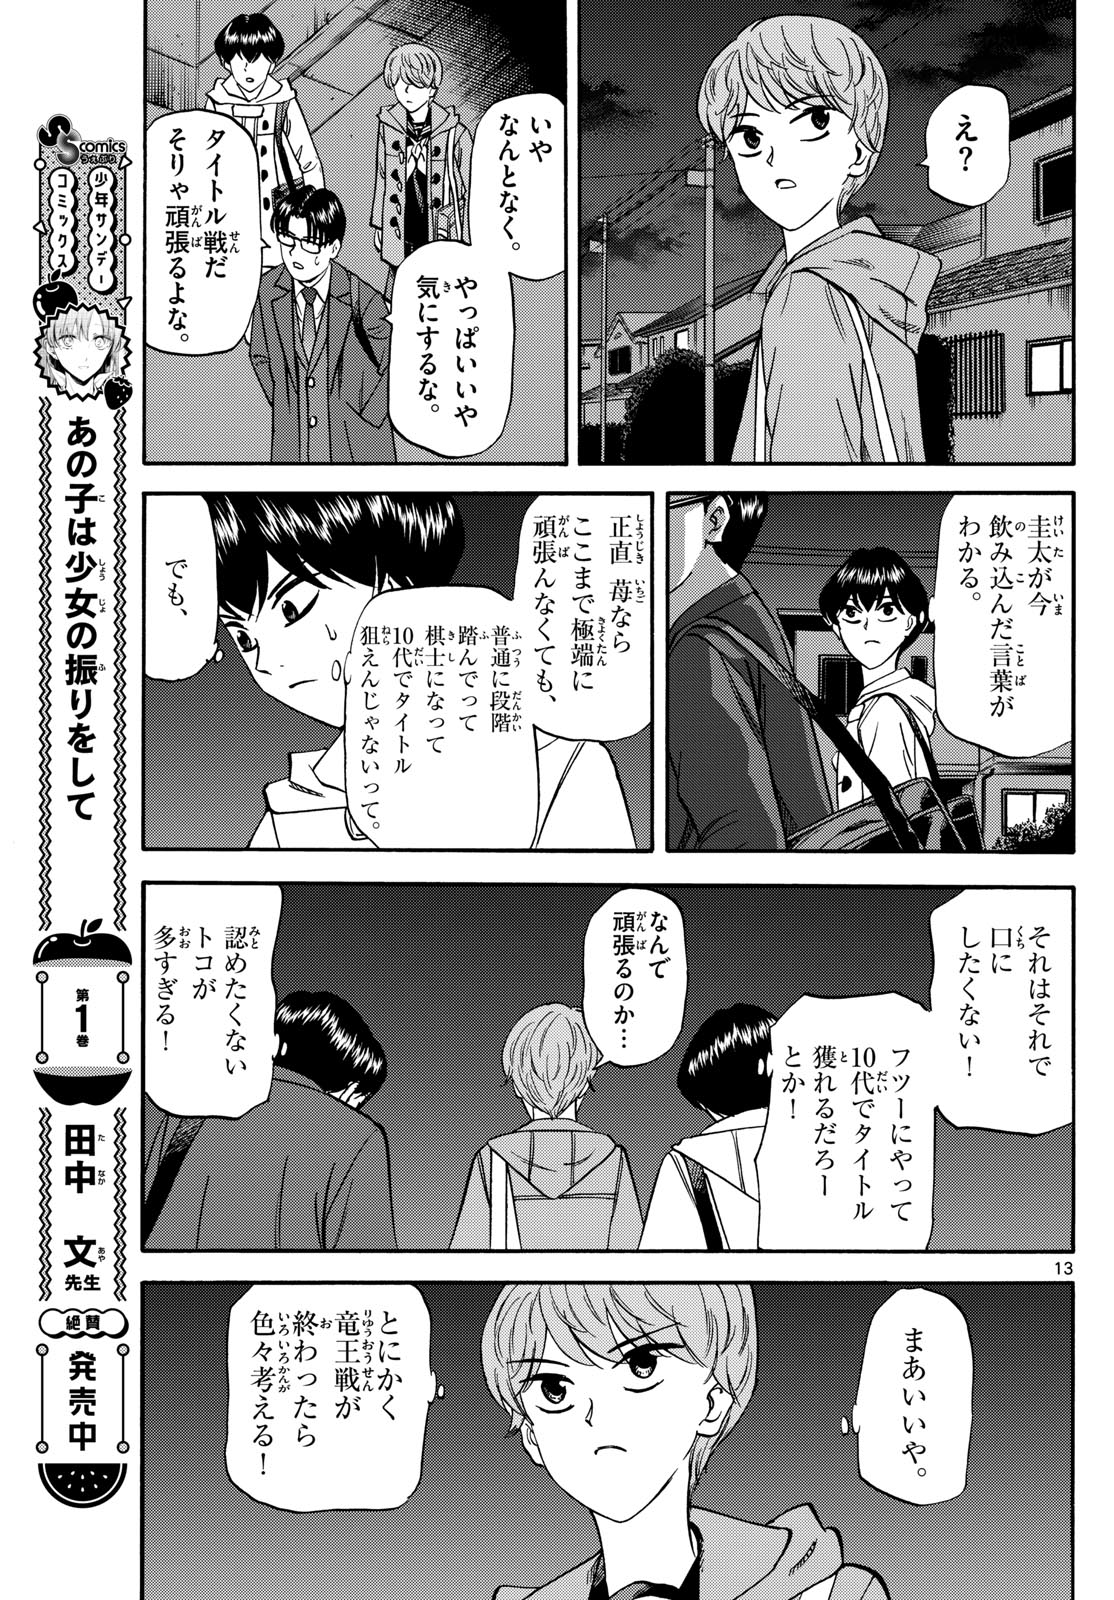 Tatsu to Ichigo - Chapter 171 - Page 13